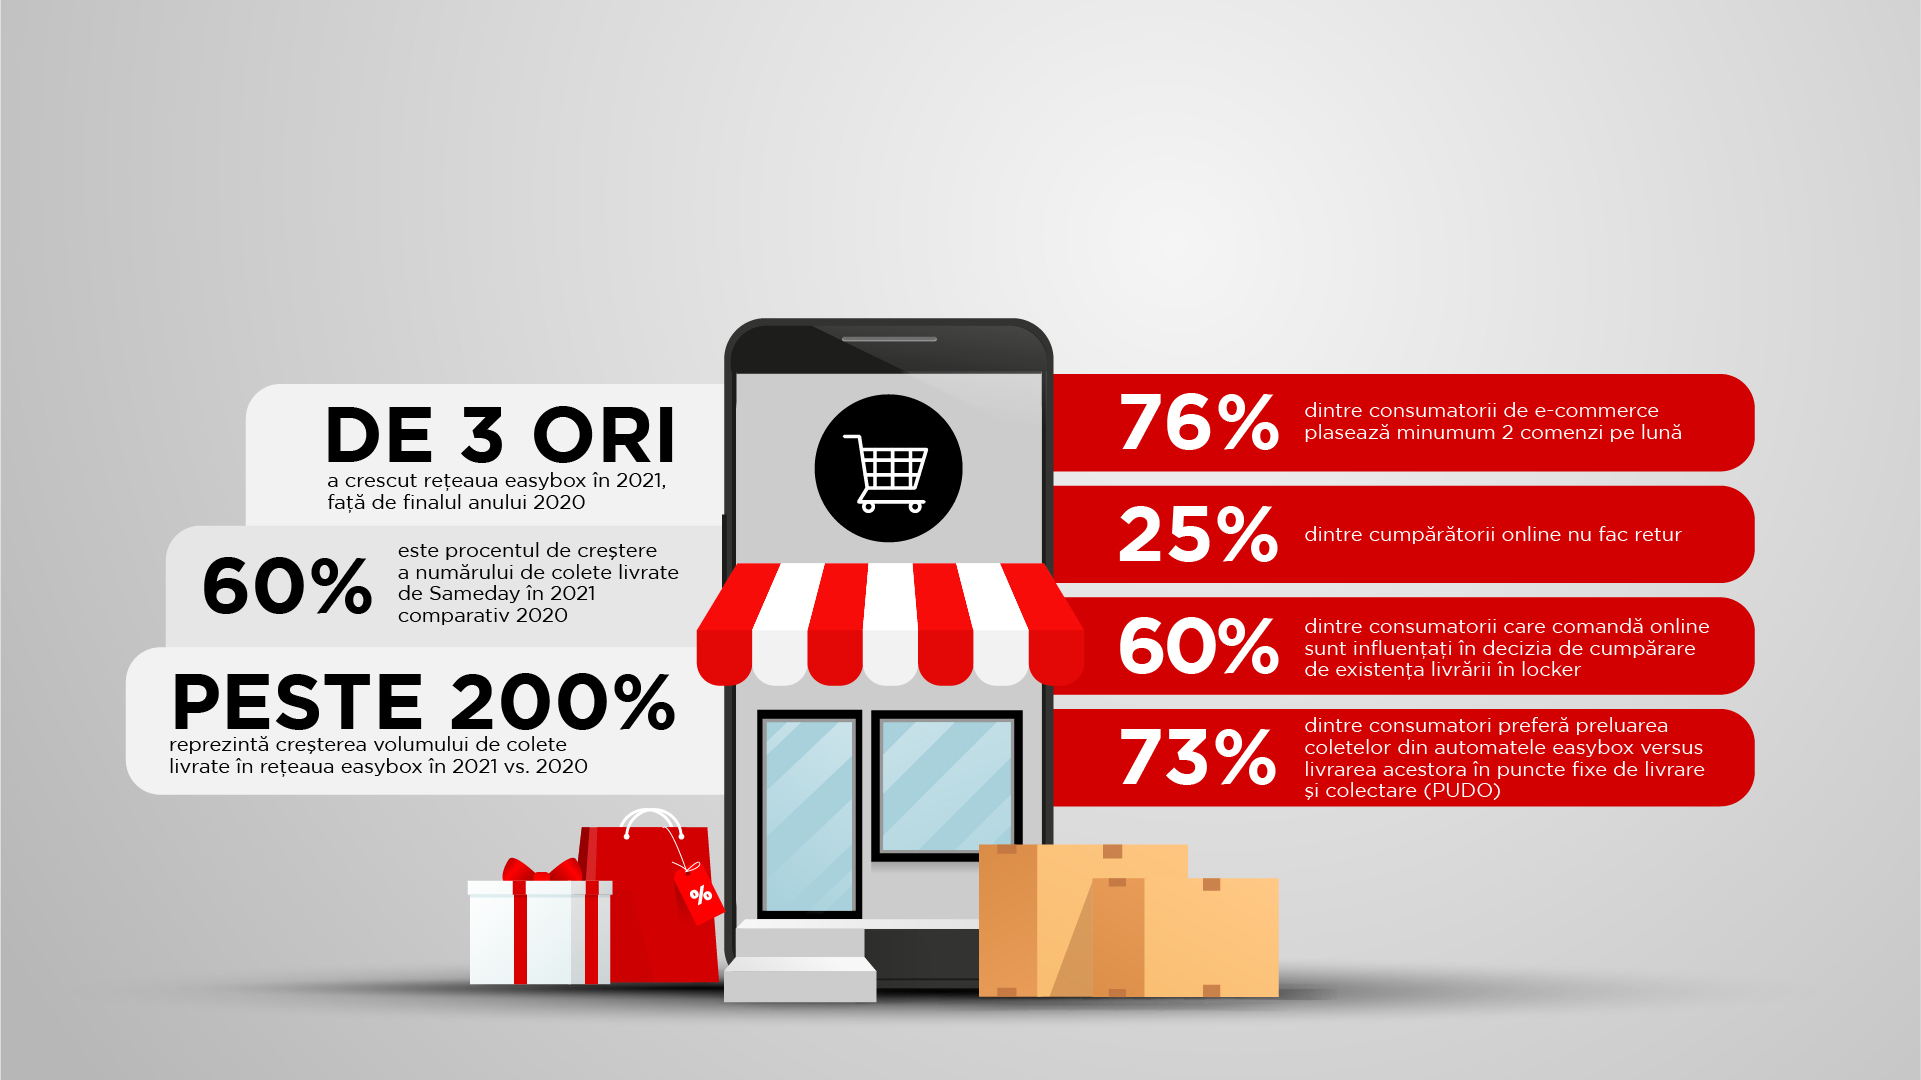 Studiu Sameday: 76% dintre consumatorii de e-commerce plasează minumum 2 comenzi pe lună, iar prezența livrării în locker influențează decizia de cumpărare în 60% dintre cazuri